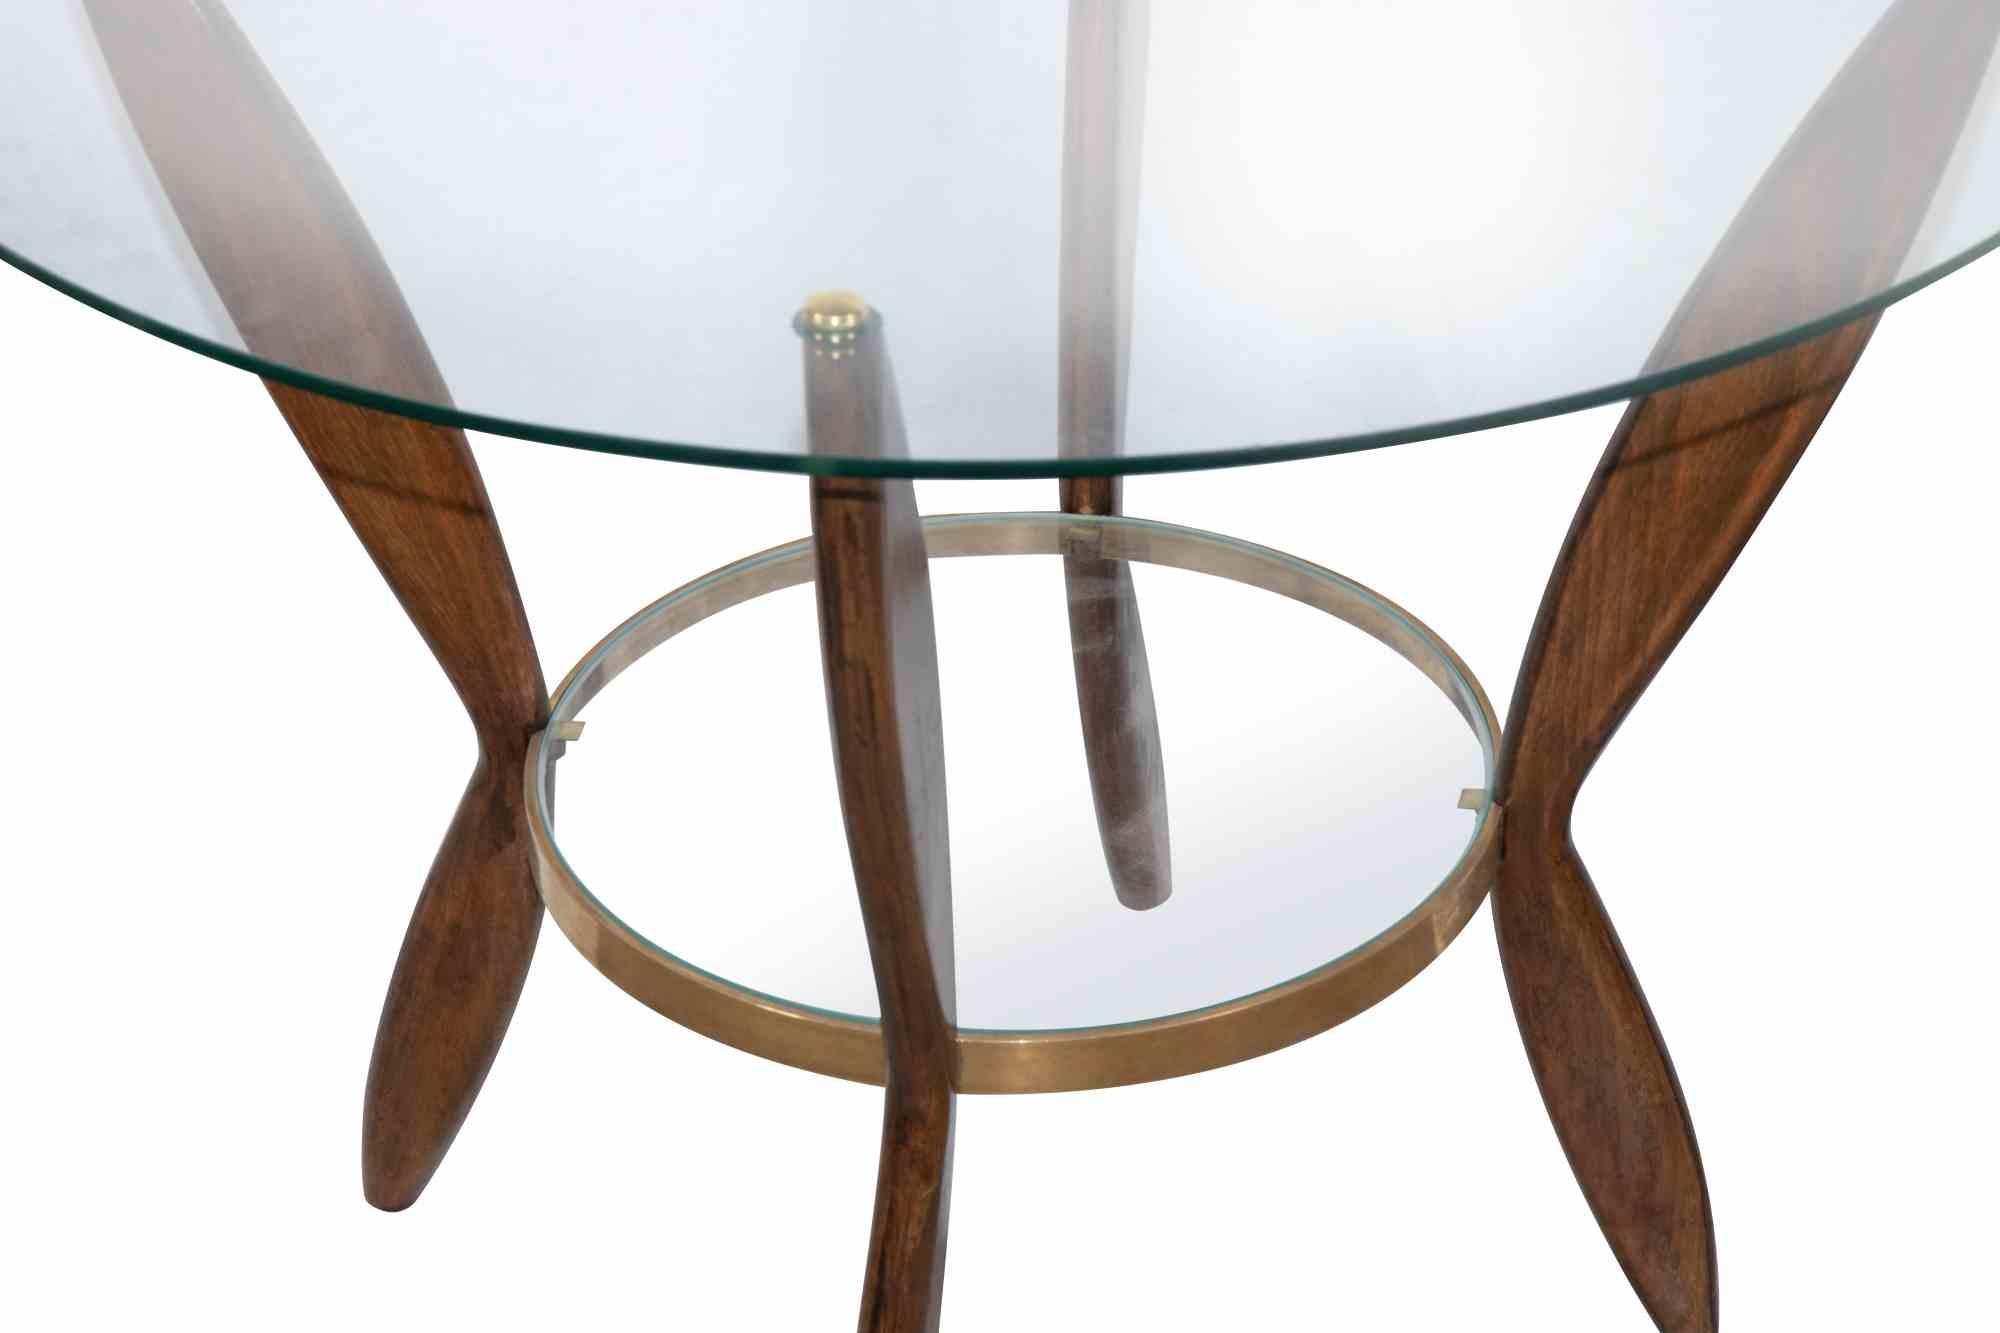 Paire de tables basses est un meuble design original réalisé par Gio Ponti dans les années 1950.

Magnifique paire de tables basses en bois avec plateaux en verre et finitions en laiton. Bois de Beeche.

Gio Ponti (Milan 1891 - 1979) est un